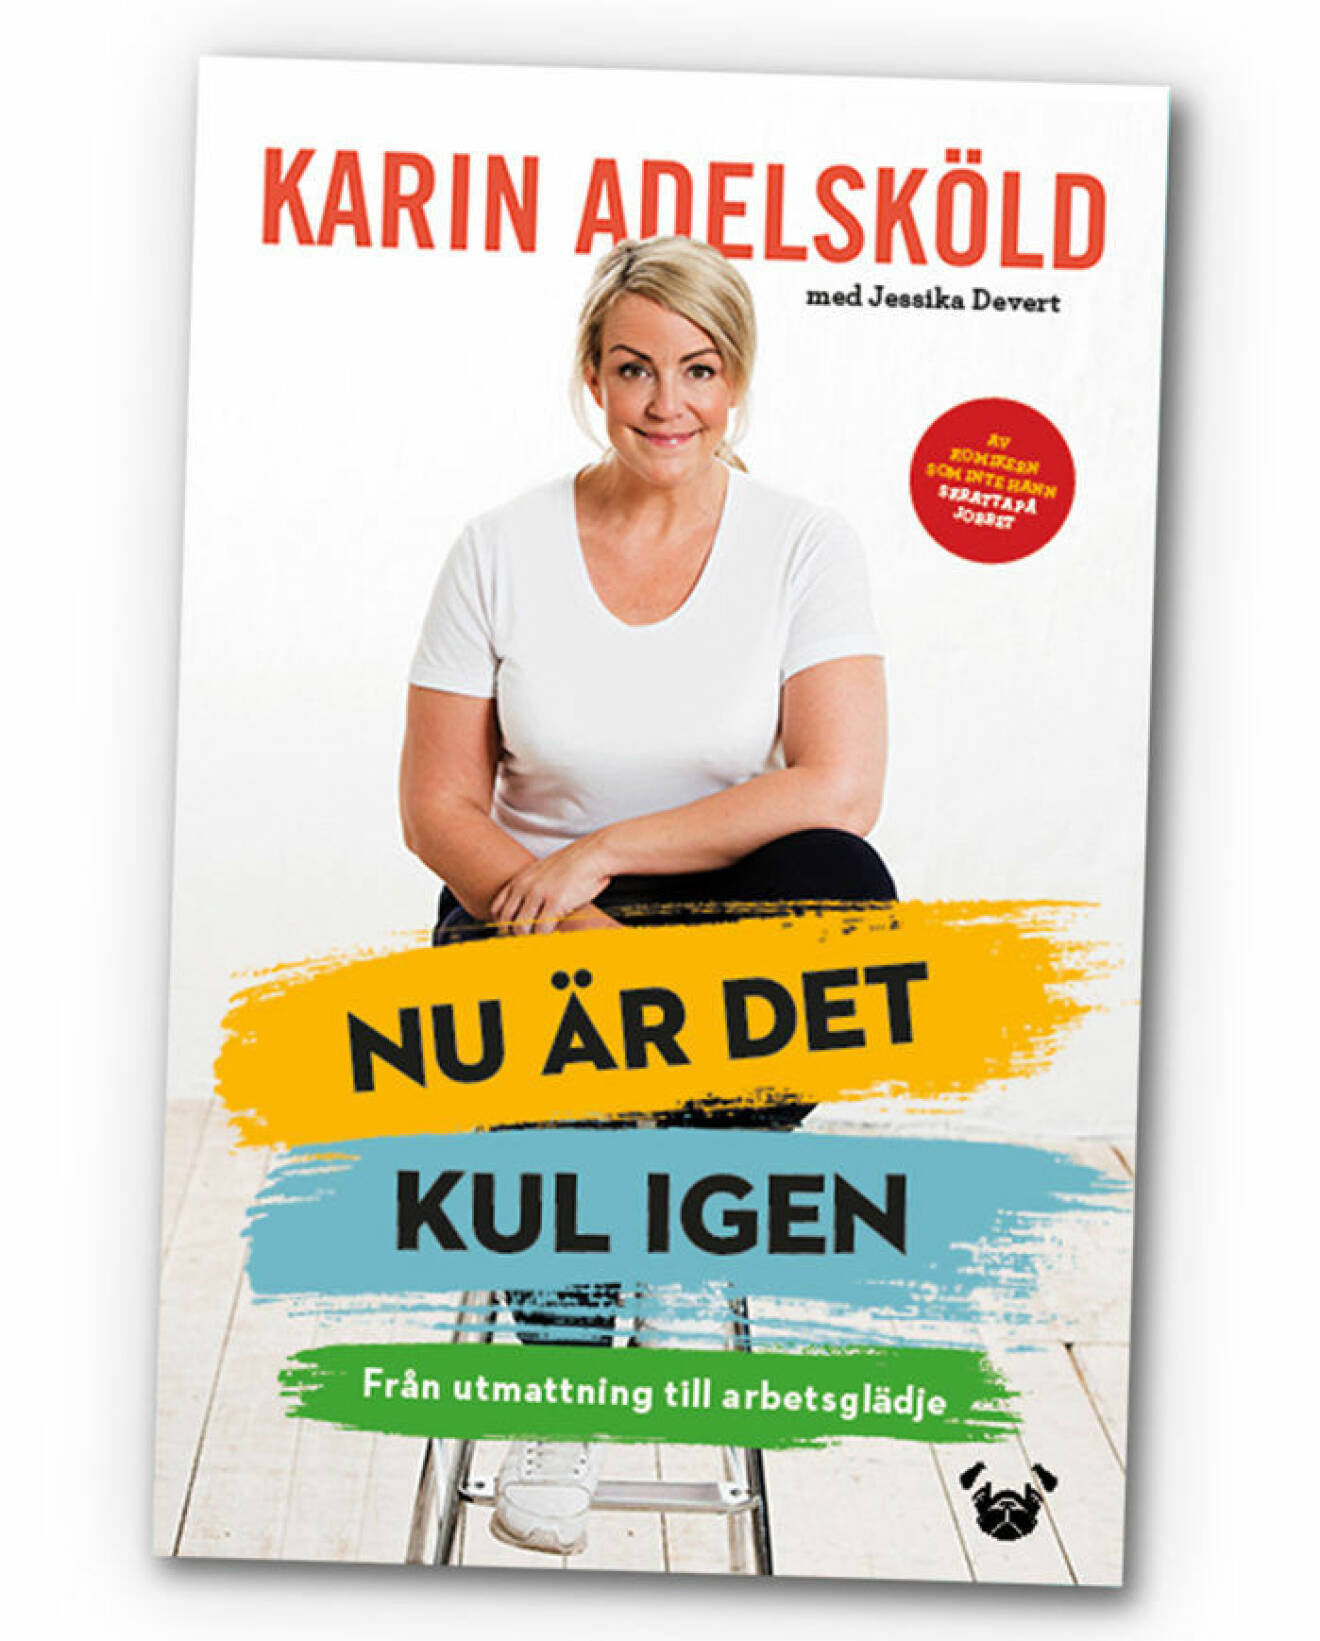 Karin Adelsköld är aktuell med boken som handlar om humor.